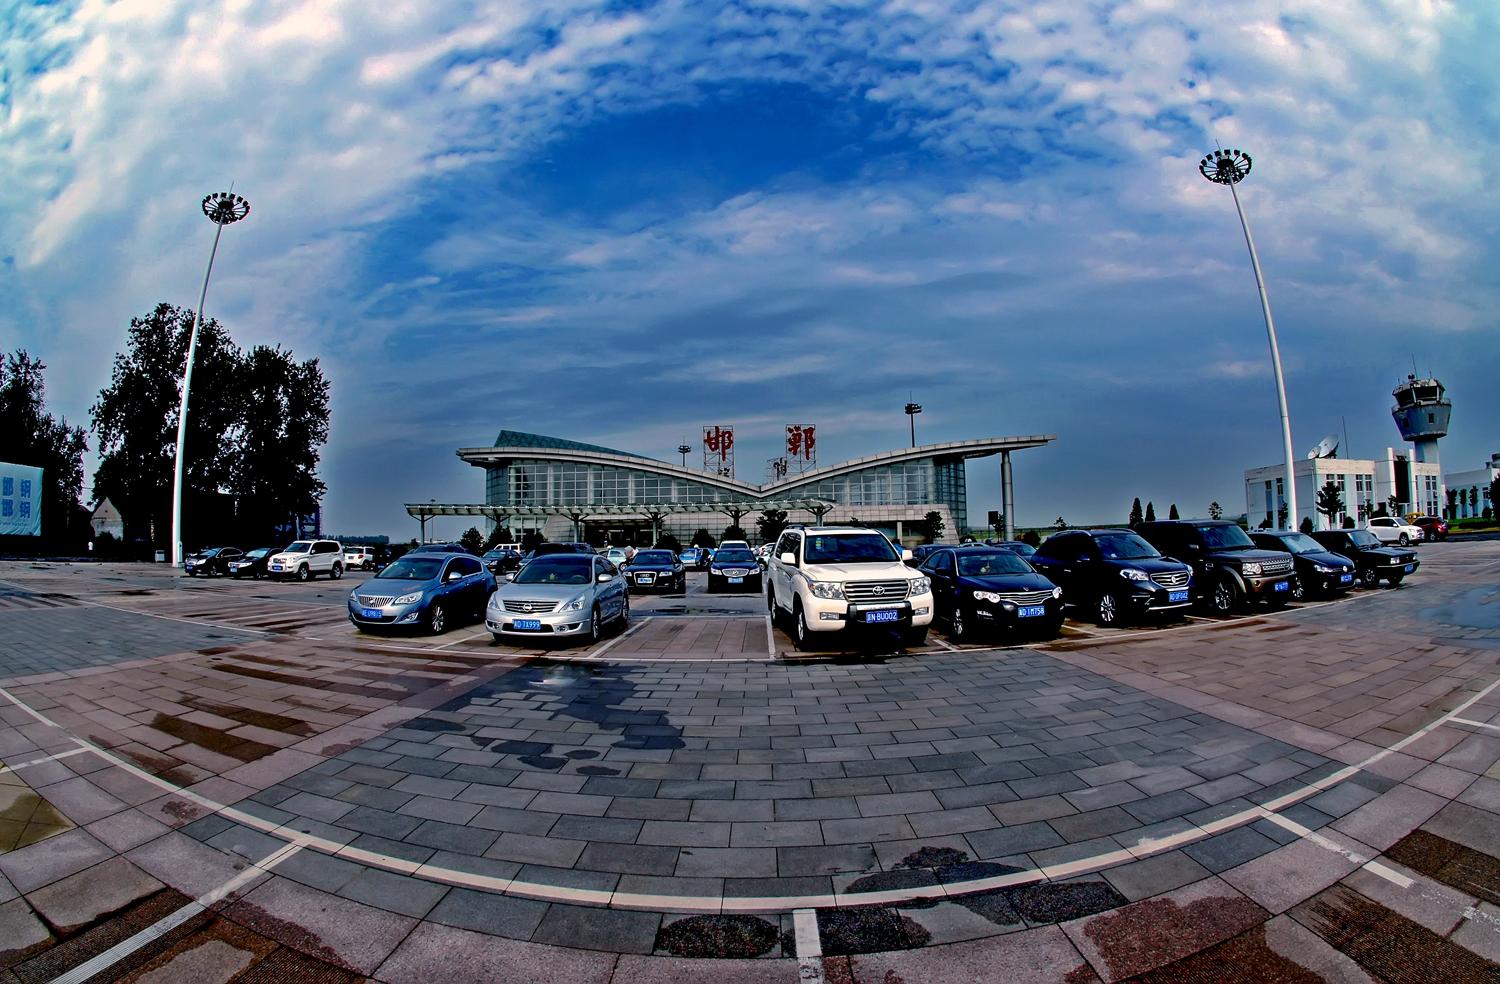 邯郸南郊机场图片